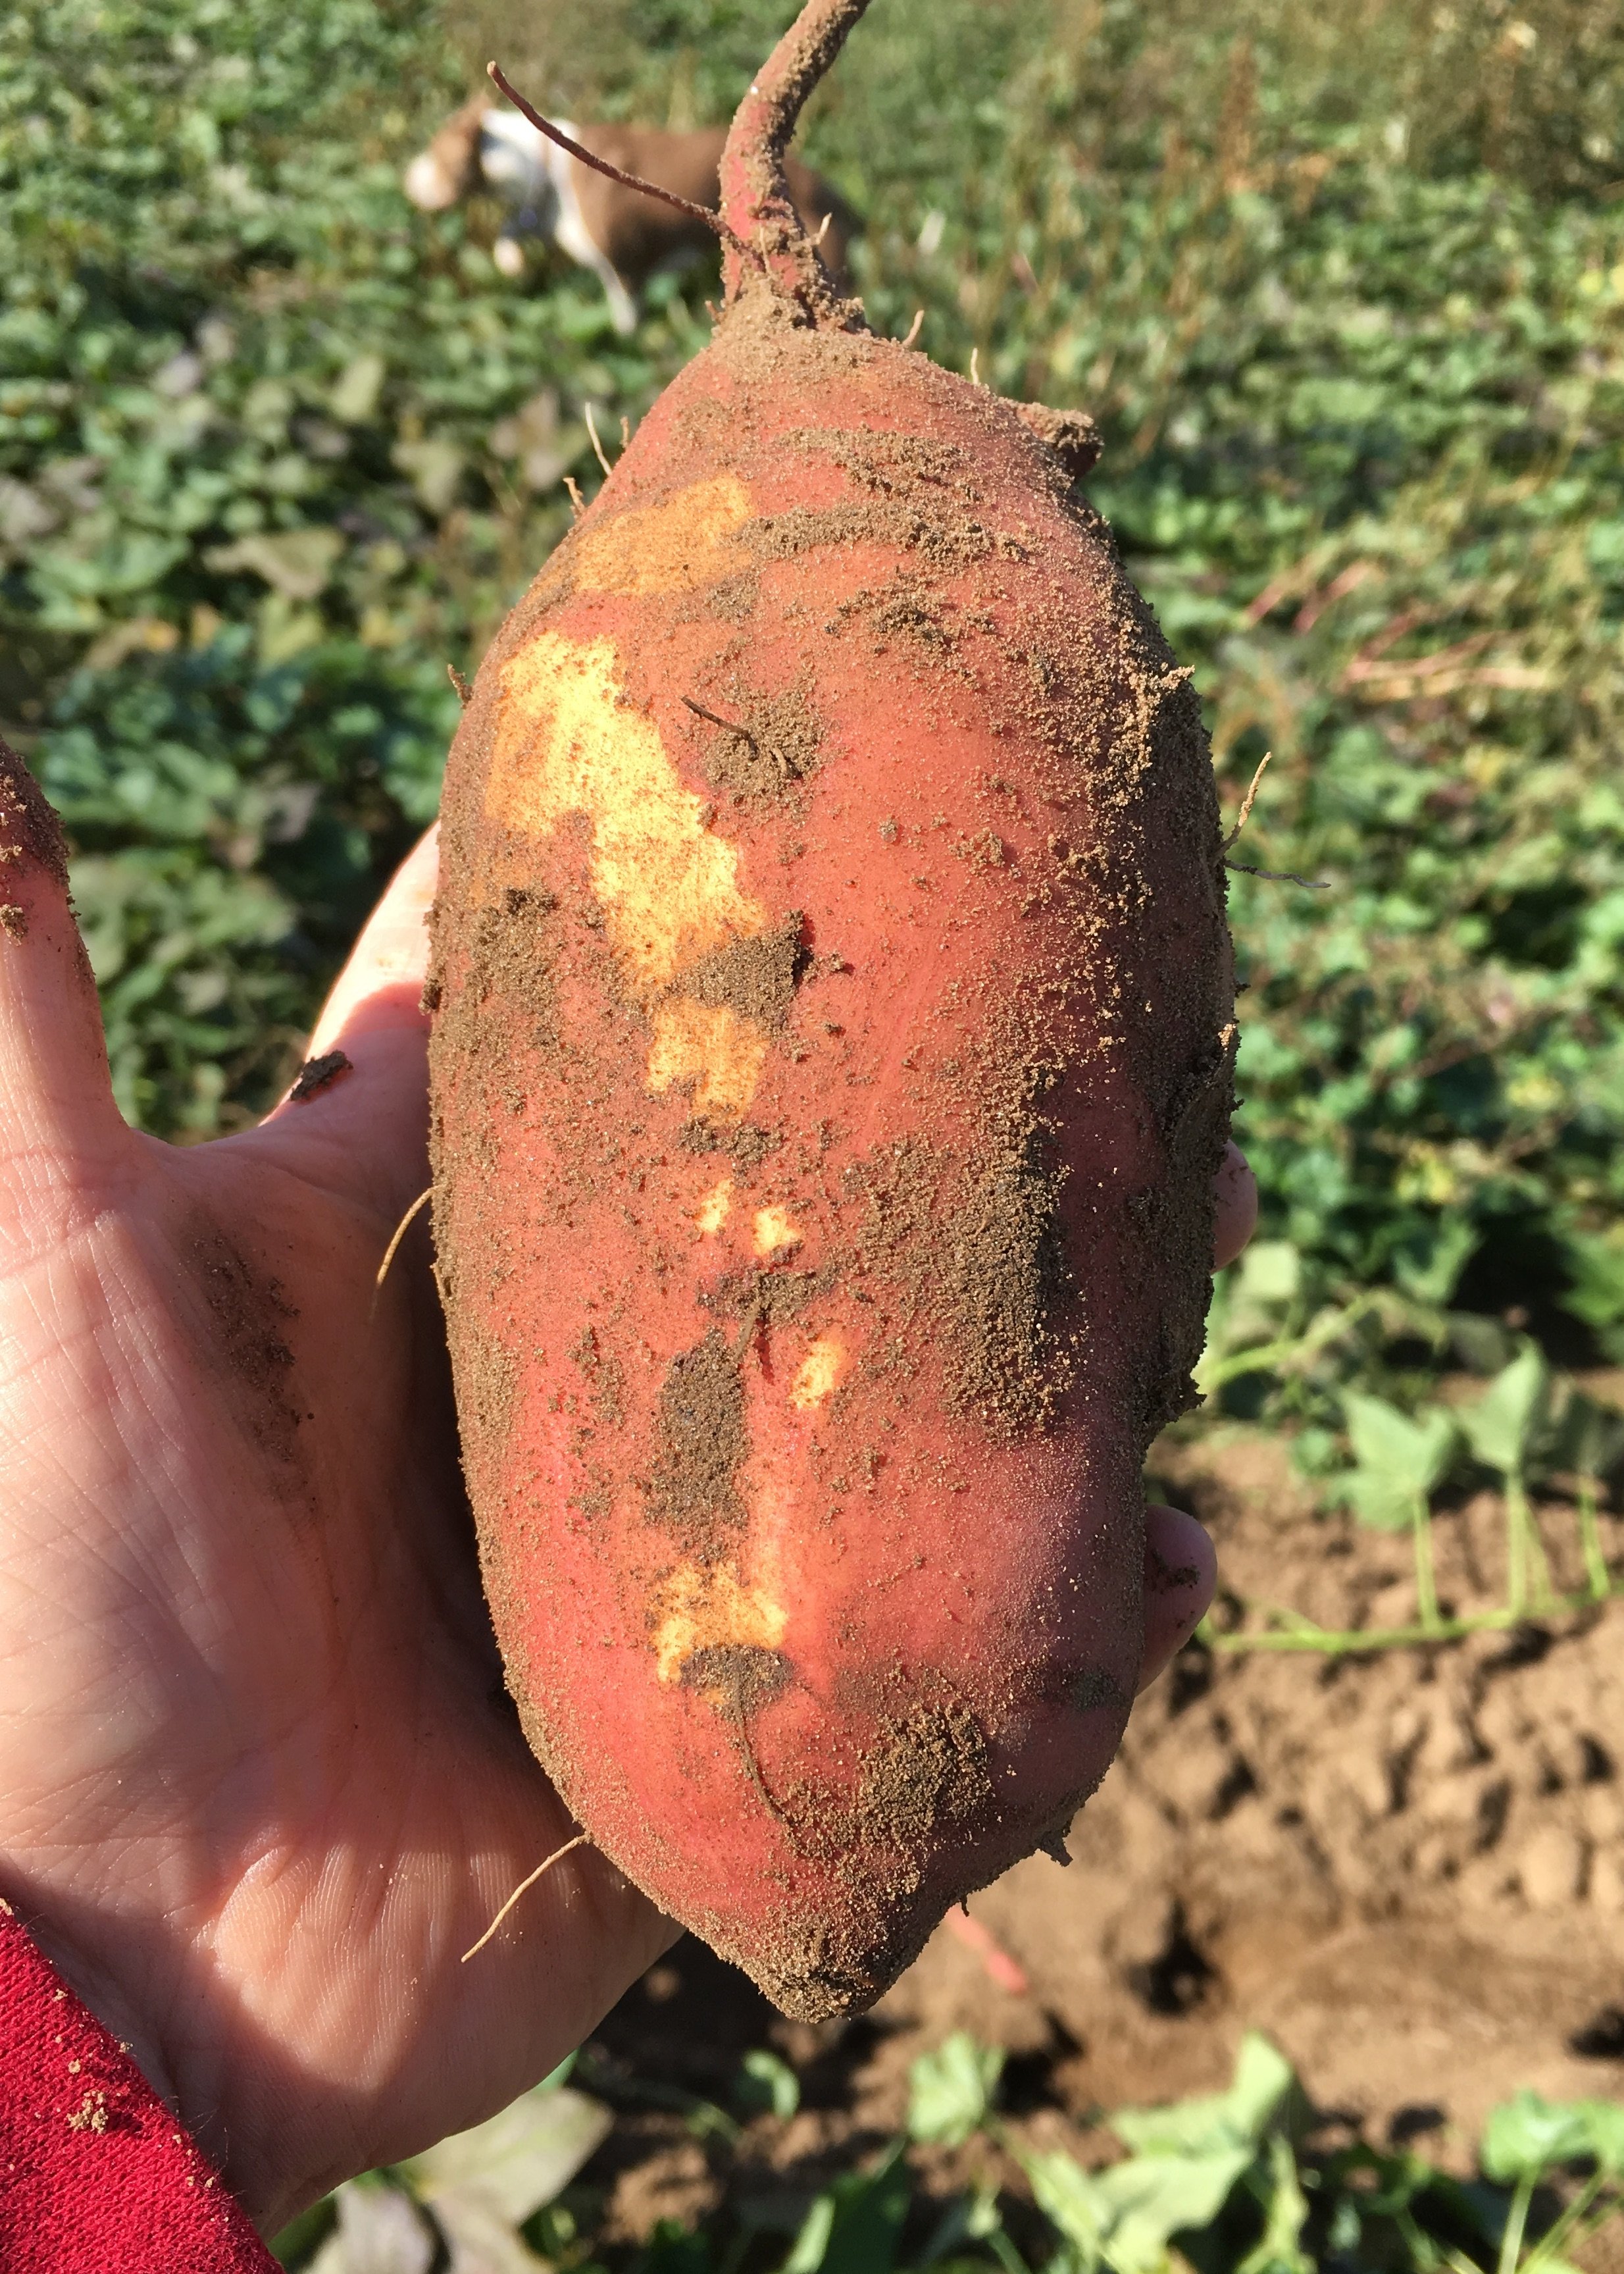 Previous Happening: Cooper's CSA Farm Happenings week 17 Sweet Potatoes!!!